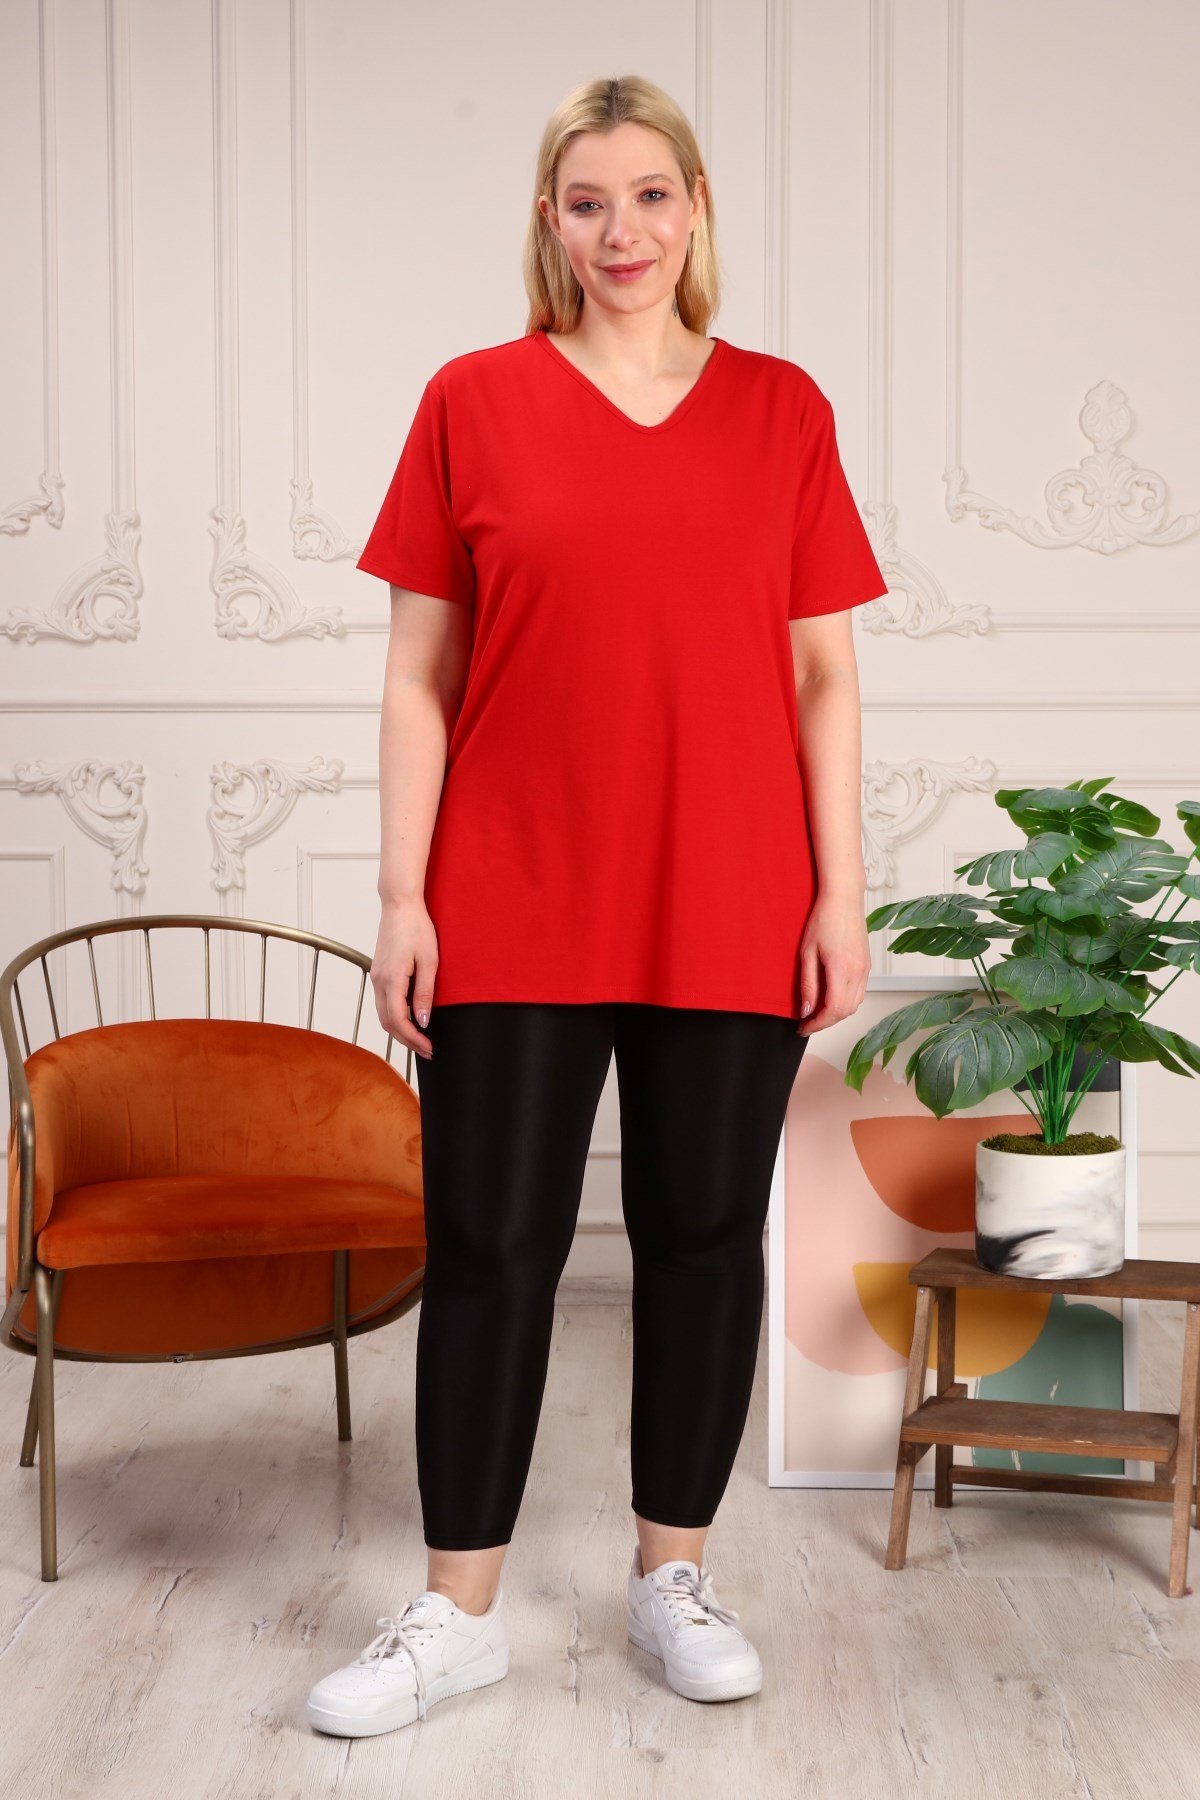 Büyük Beden V Yaka Yanları Yırtmaçlı Pamuklu Kırmızı Kadın Basıc  TişörtBüyük Beden Triko | Pantolon | Tulum | Şort | Elbise - Tarzım  SüperTarzım Süper online mağazamızda en trend ve en şık